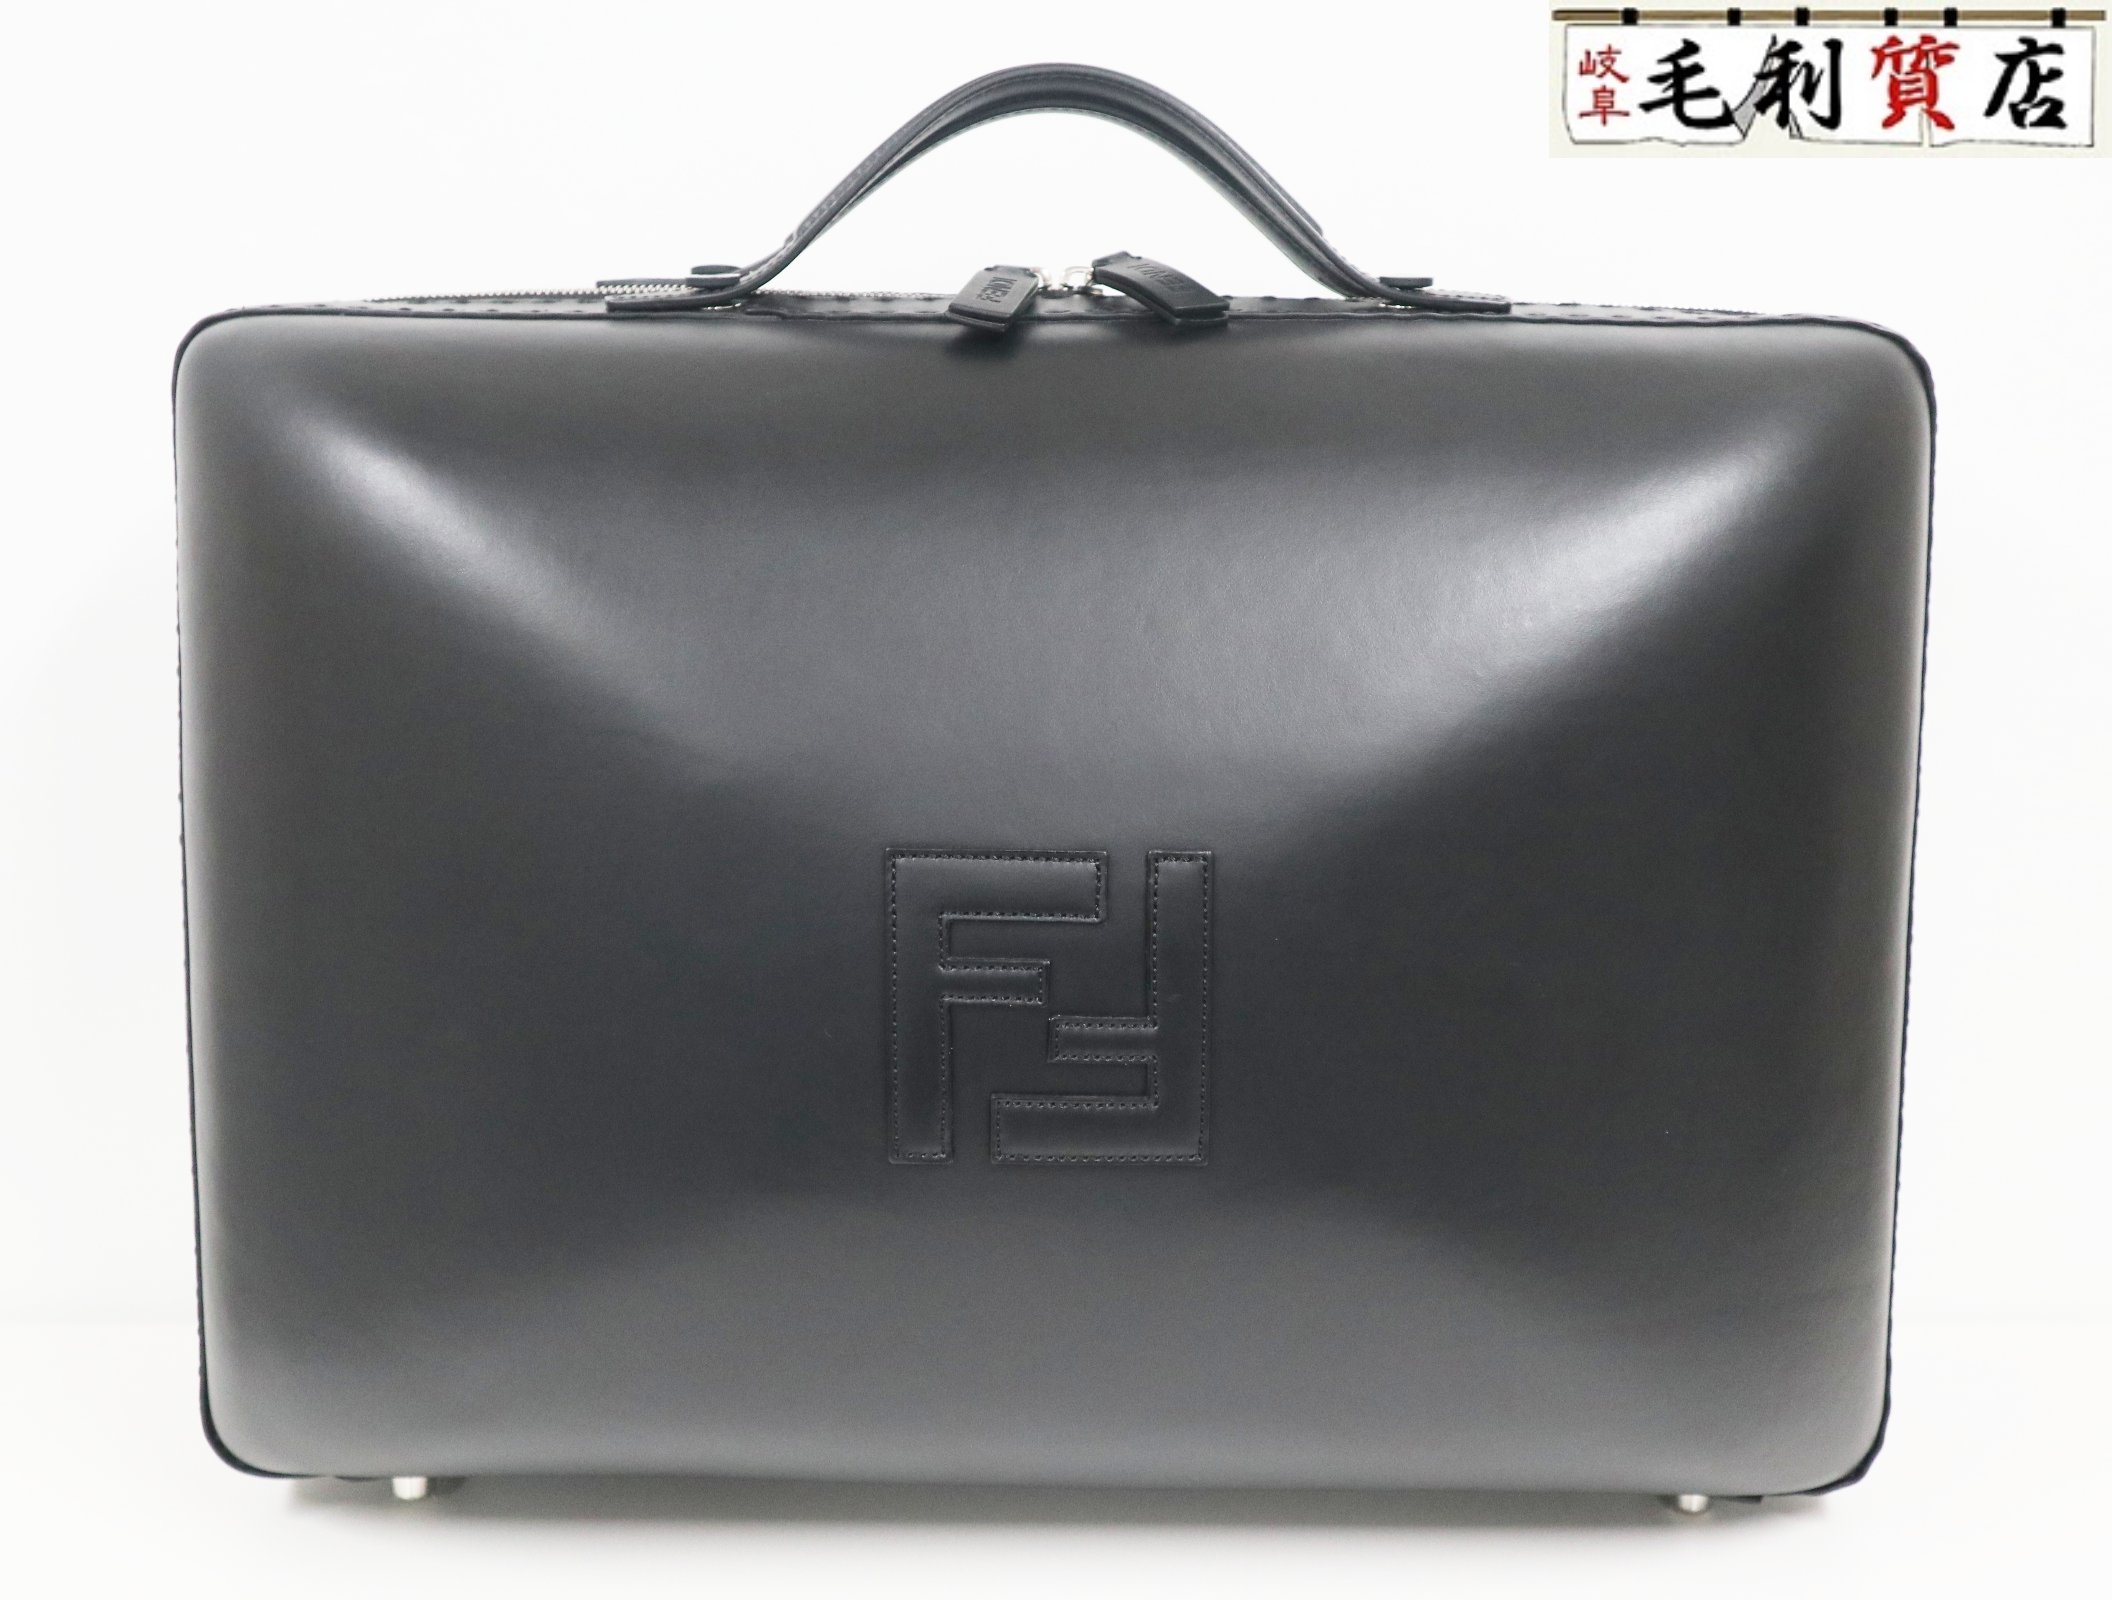 フェンディ FENDI ラージ スーツケース 7VV158 AAIW FFロゴ カーフレザー ブラック 極上美品 【中古】バッグ ショルダーバッグ